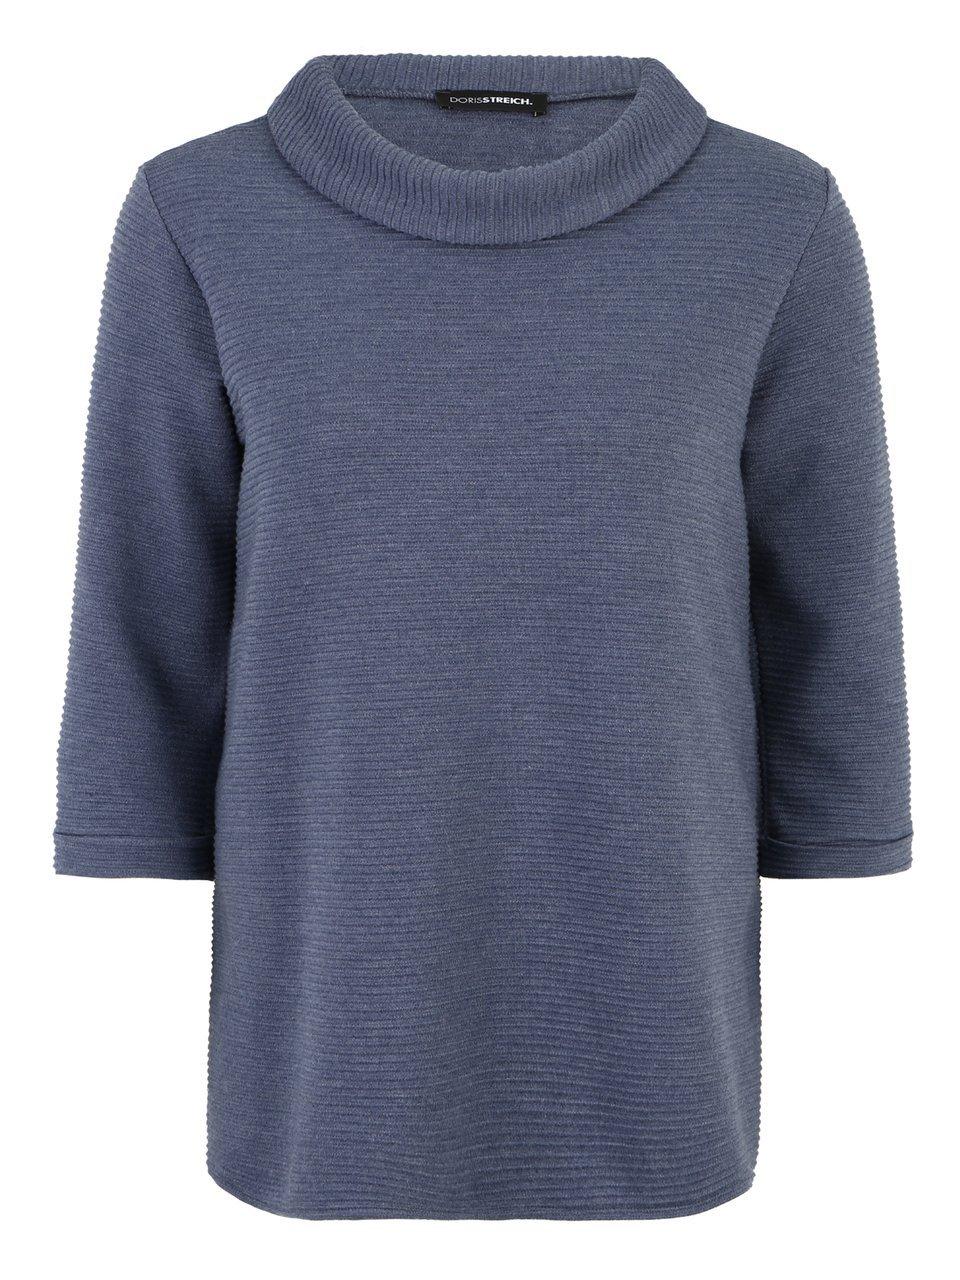 Sweatshirt een platte kraag Van Doris Streich blauw